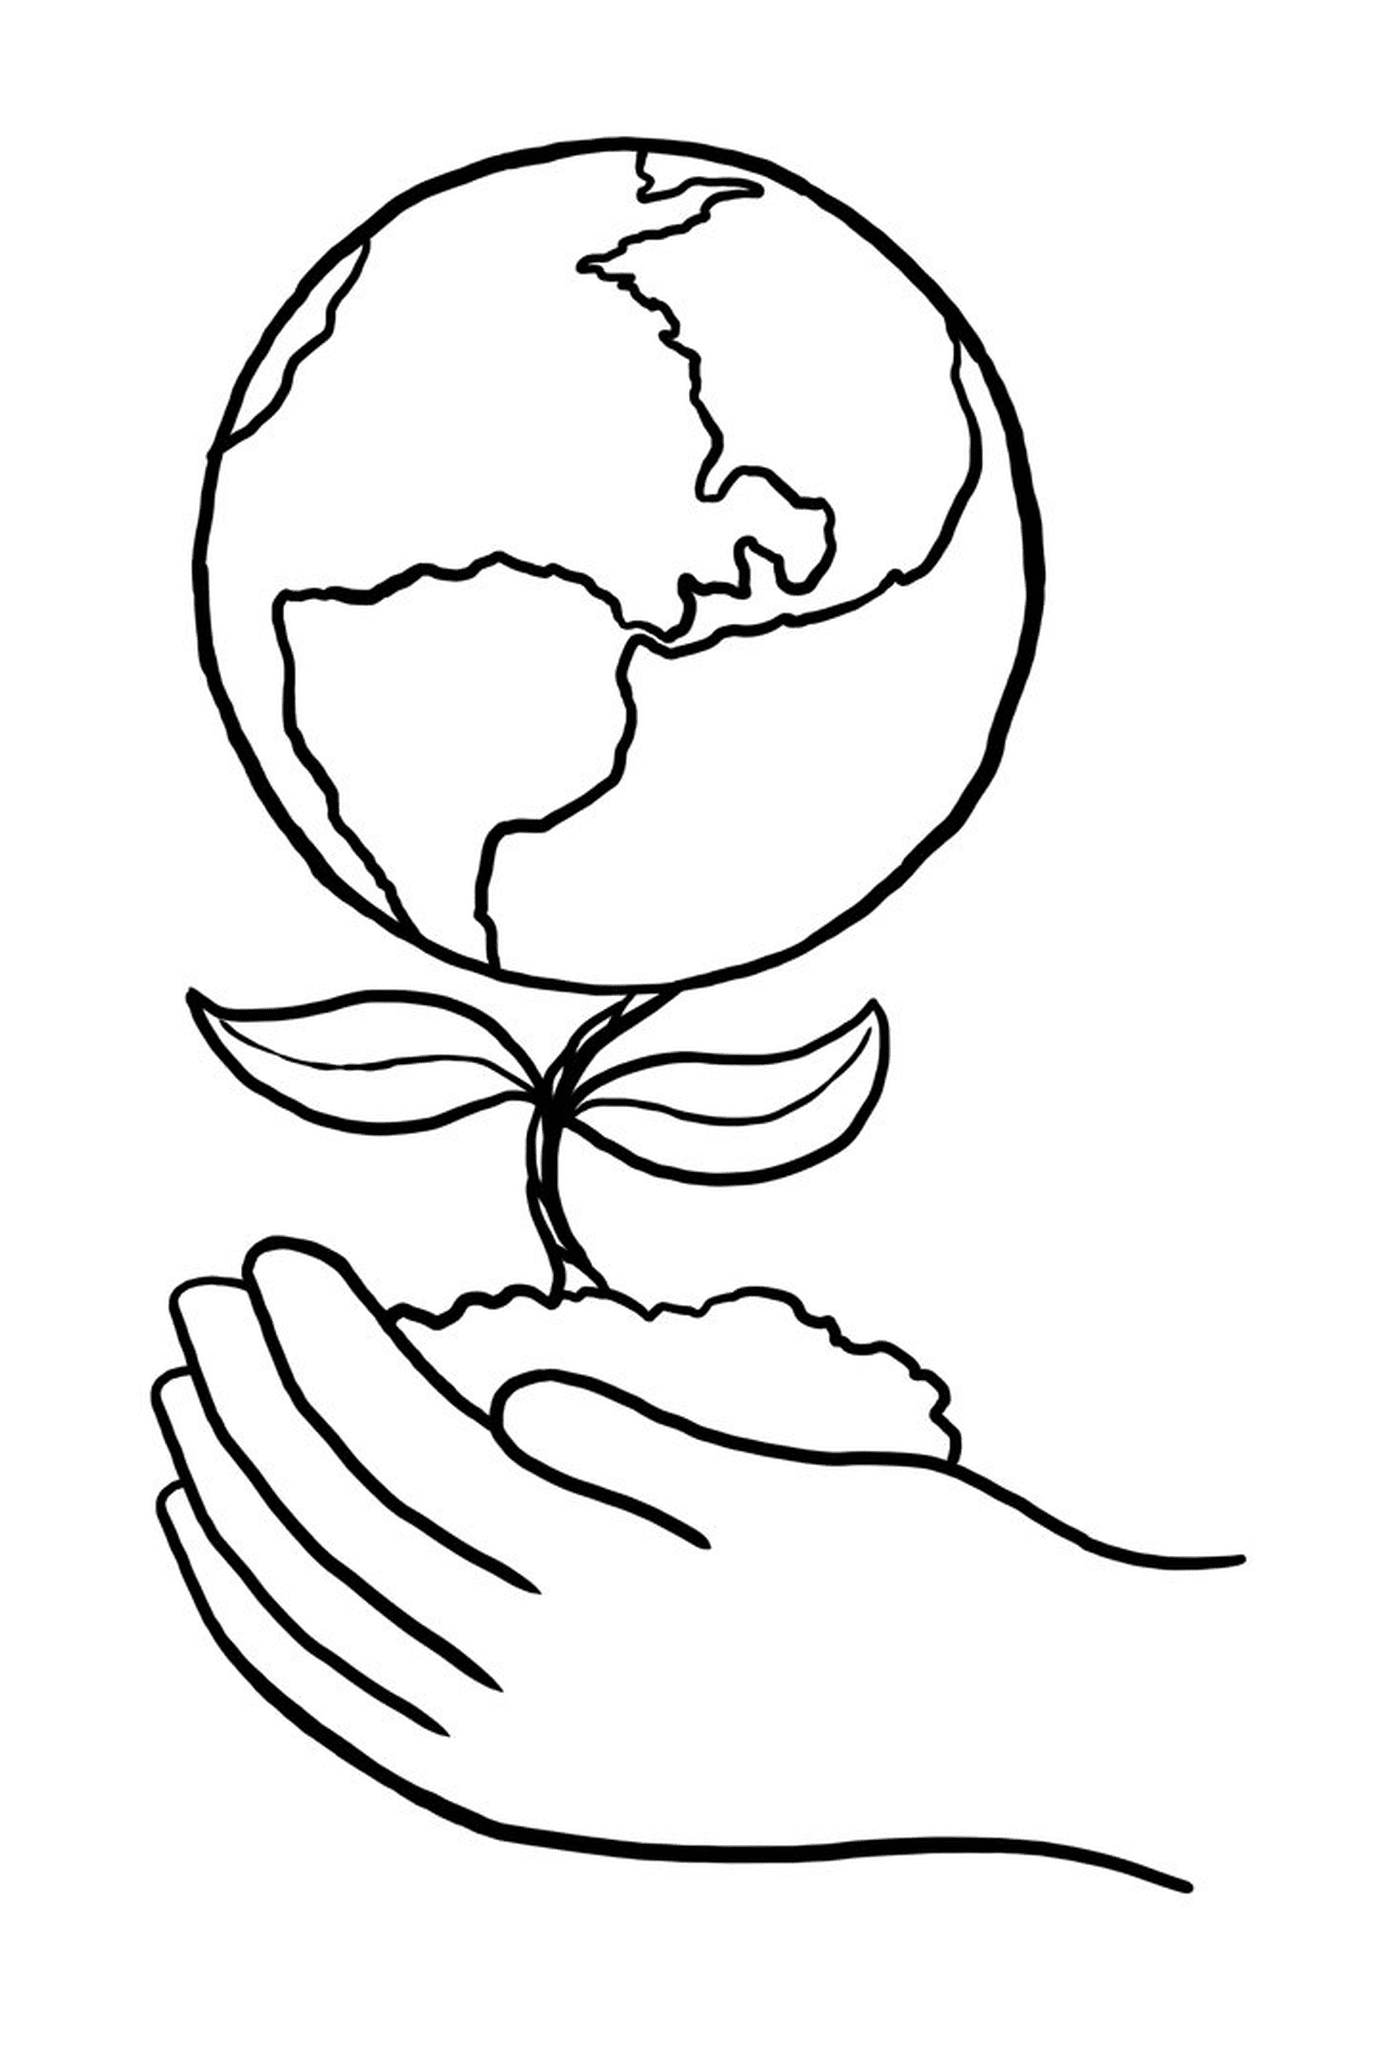  Una mano sosteniendo una planta frente a un globo terráqueo 